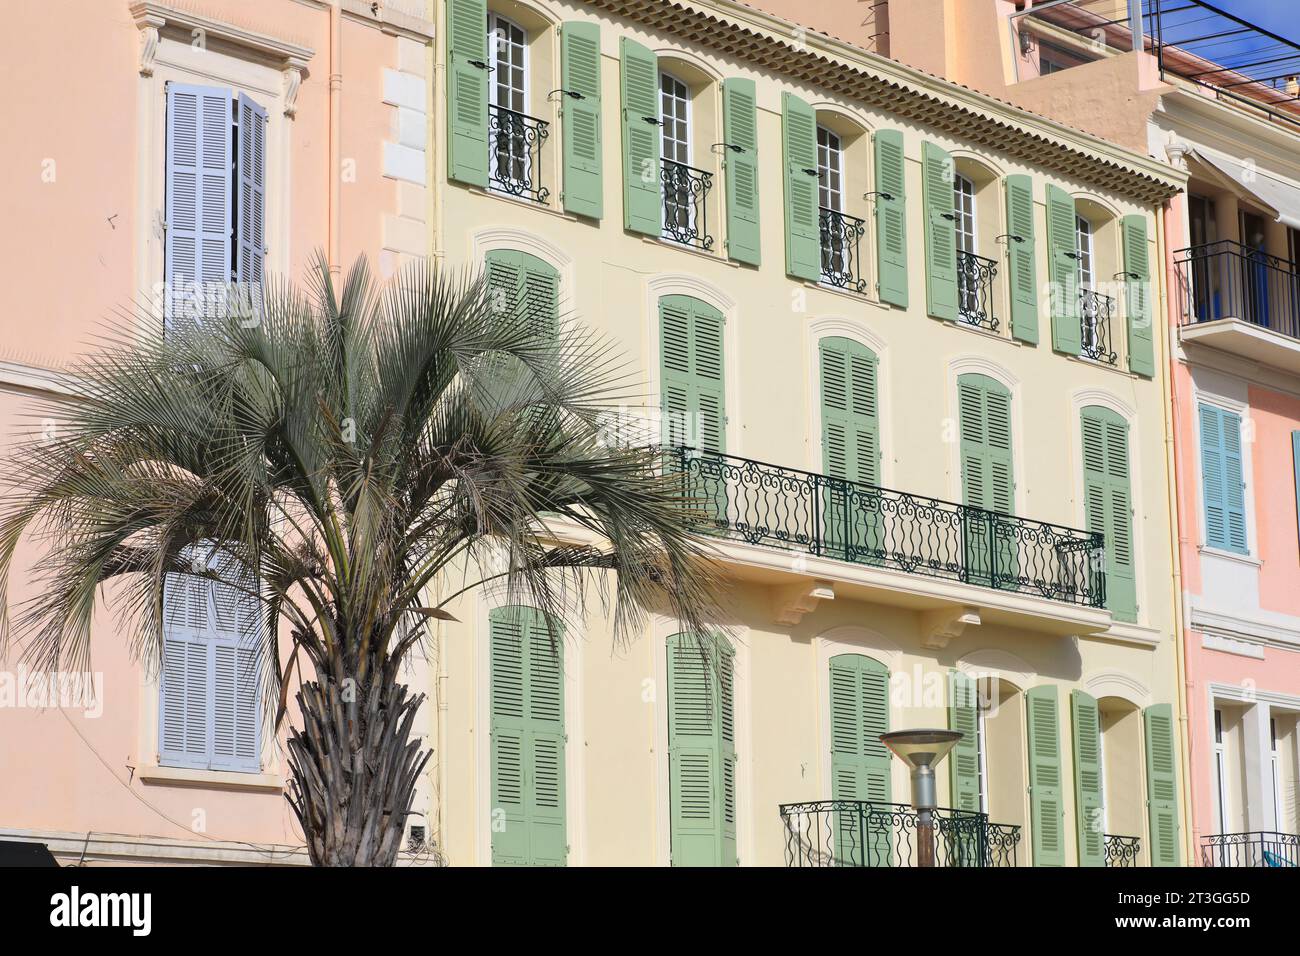 France, Alpes Maritimes, Cannes, Quai Saint Pierre, Vieux-Port, façade provençale Banque D'Images